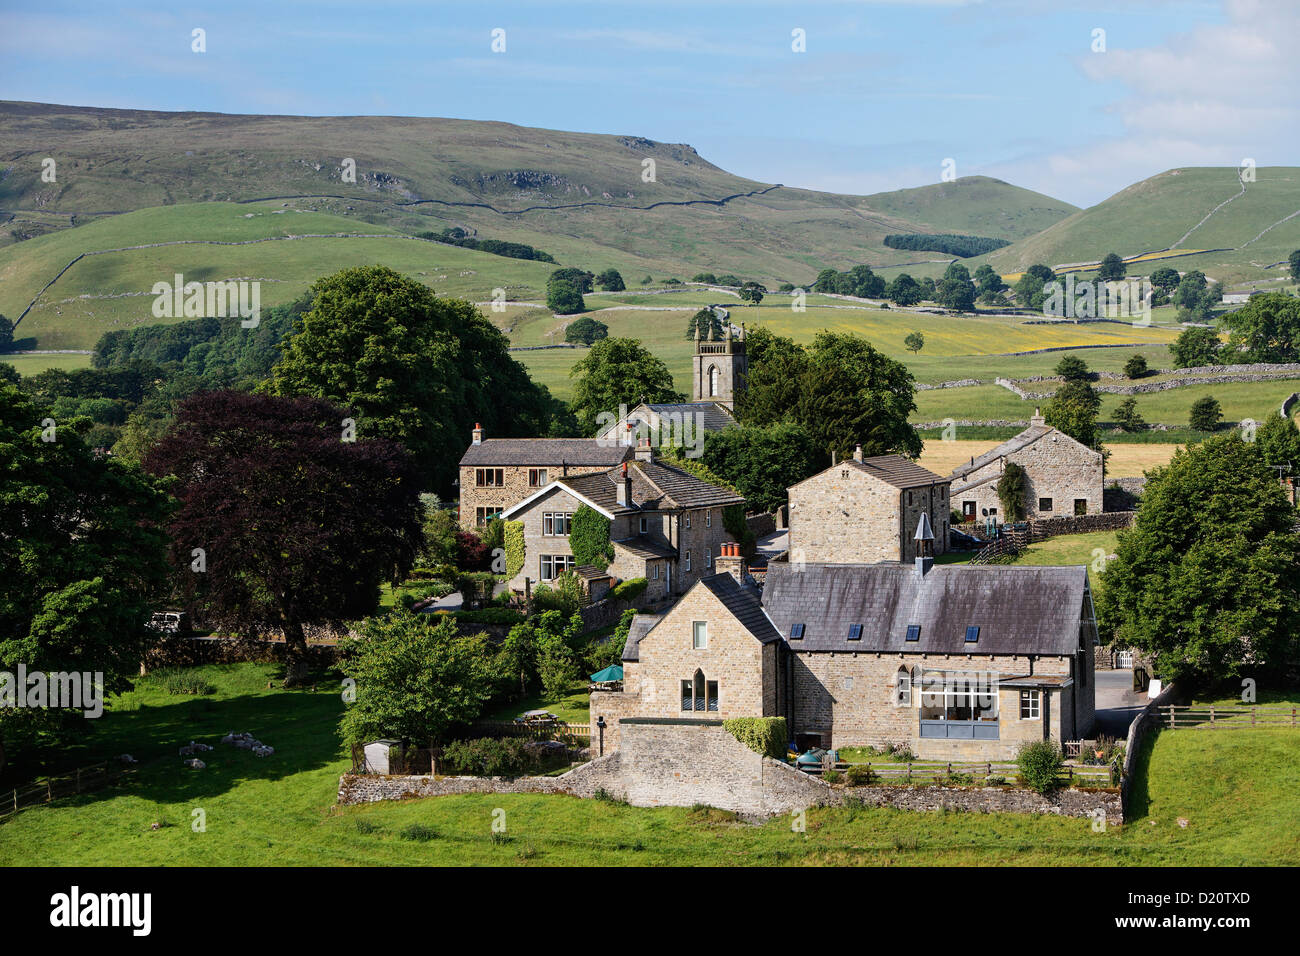 Häuser am idyllischen Hügellandschaft, Hebden, Yorkshire Dales National Park, Yorkshire Dales, Yorkshire, England, Großbritannien, Eu Stockfoto